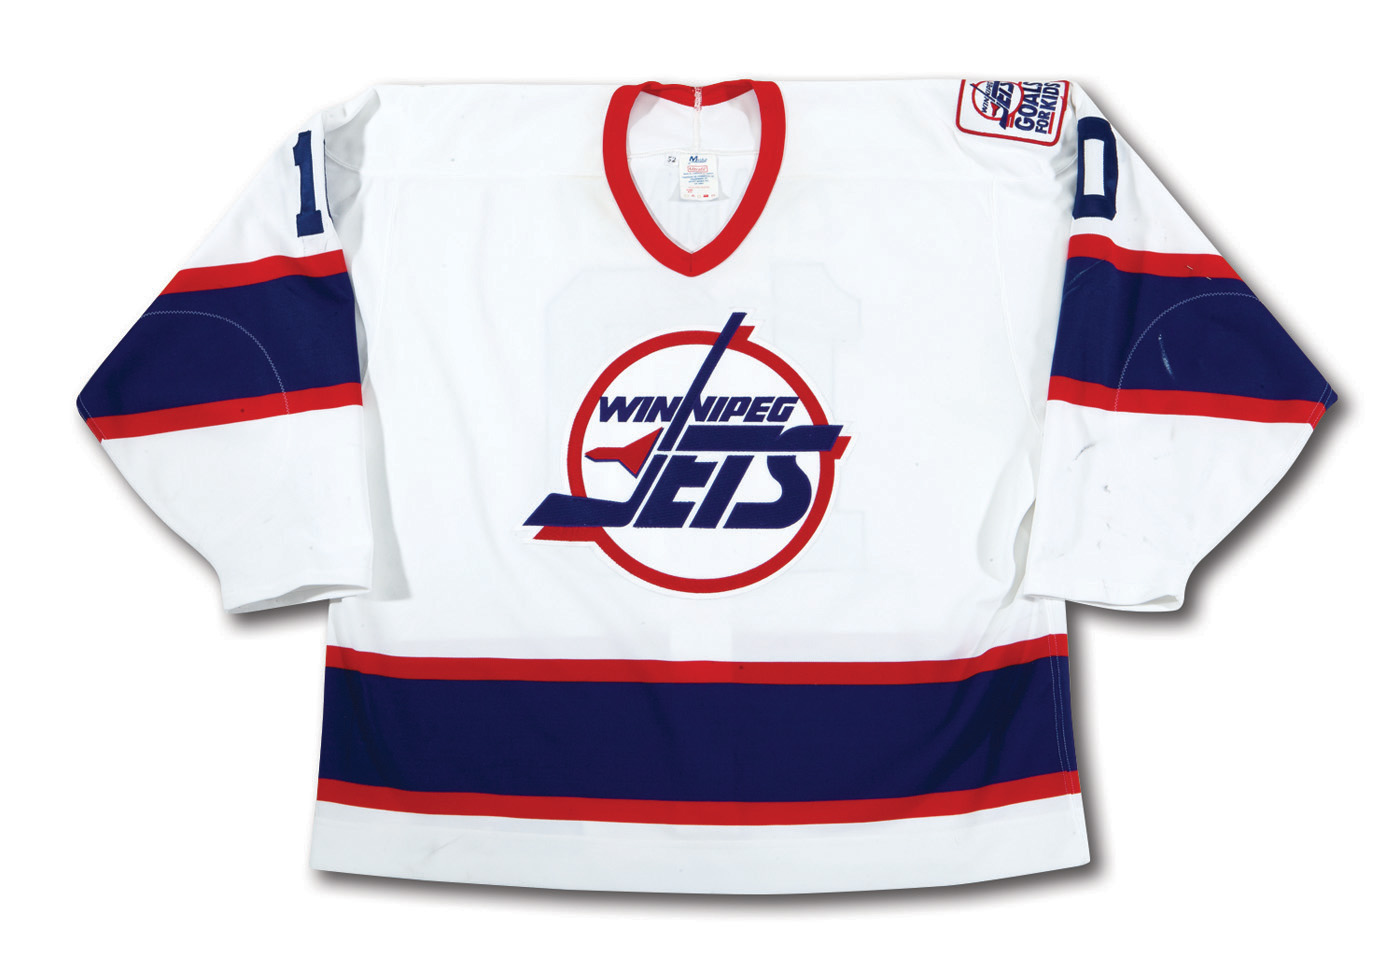 Winnipeg Jets game-worn jersey